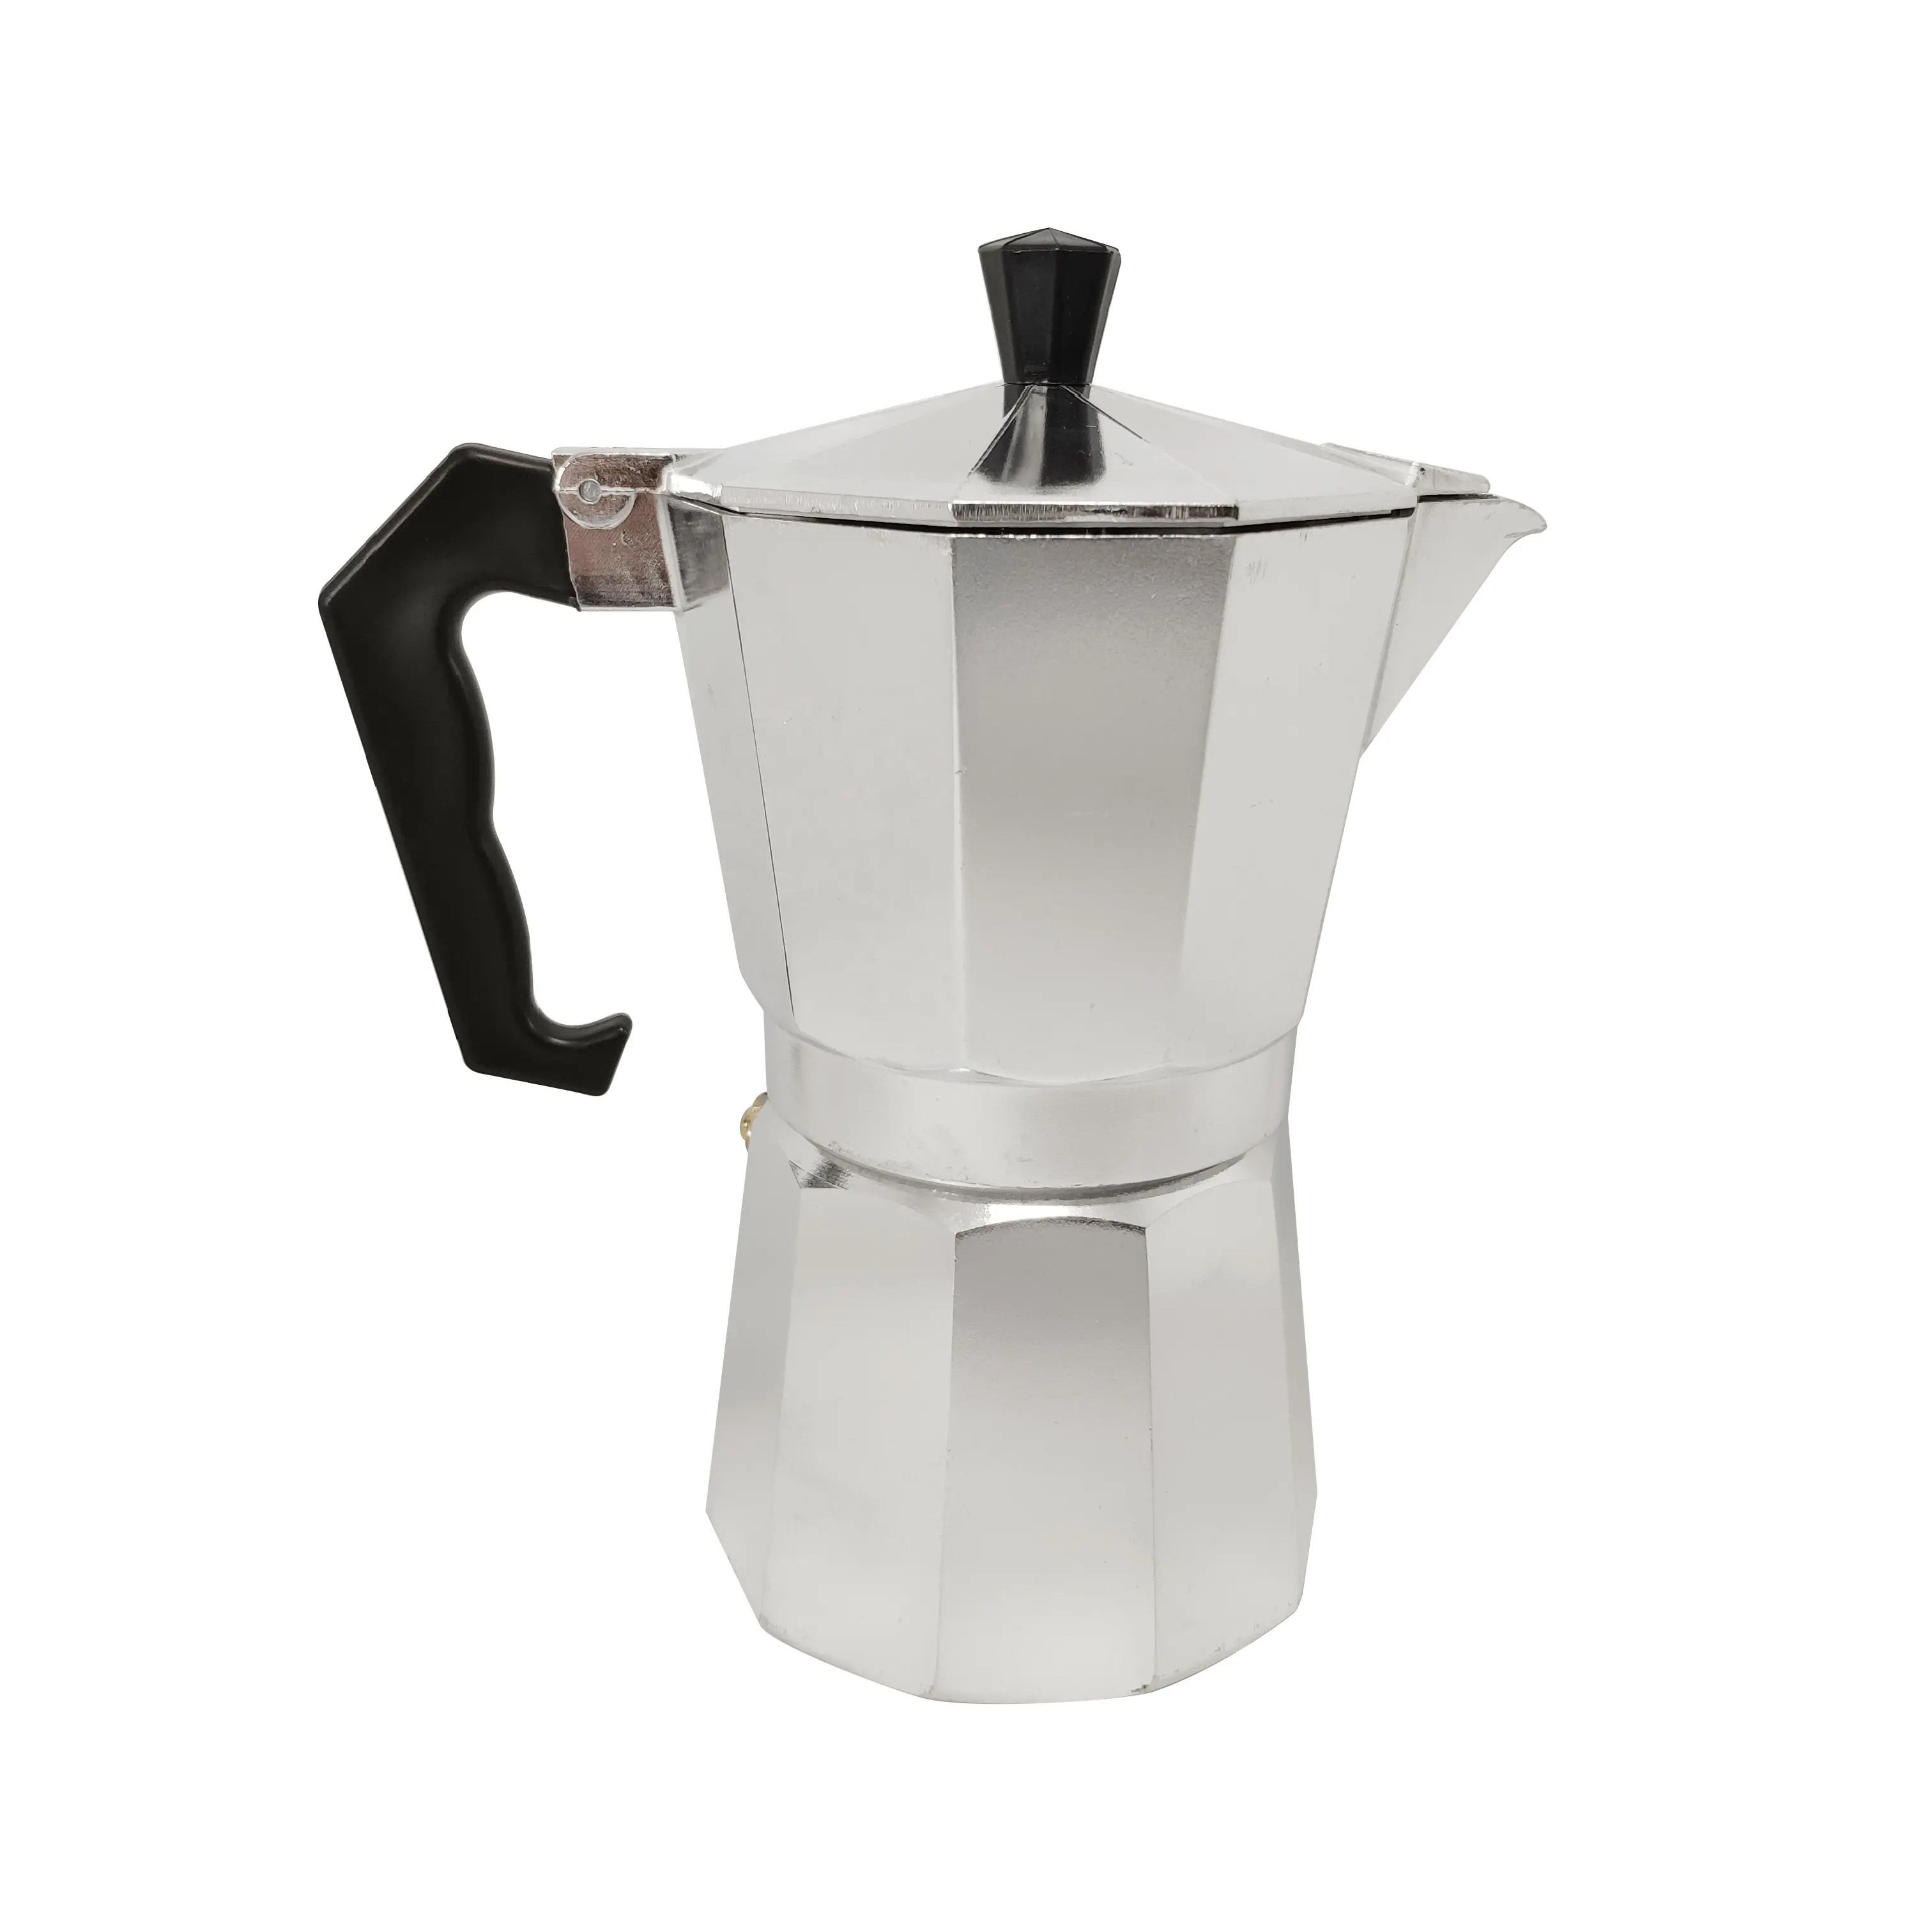 Stovetop-cafetera Moka italiana, máquina de café expreso, estufa superior de aluminio, cafetera Moka